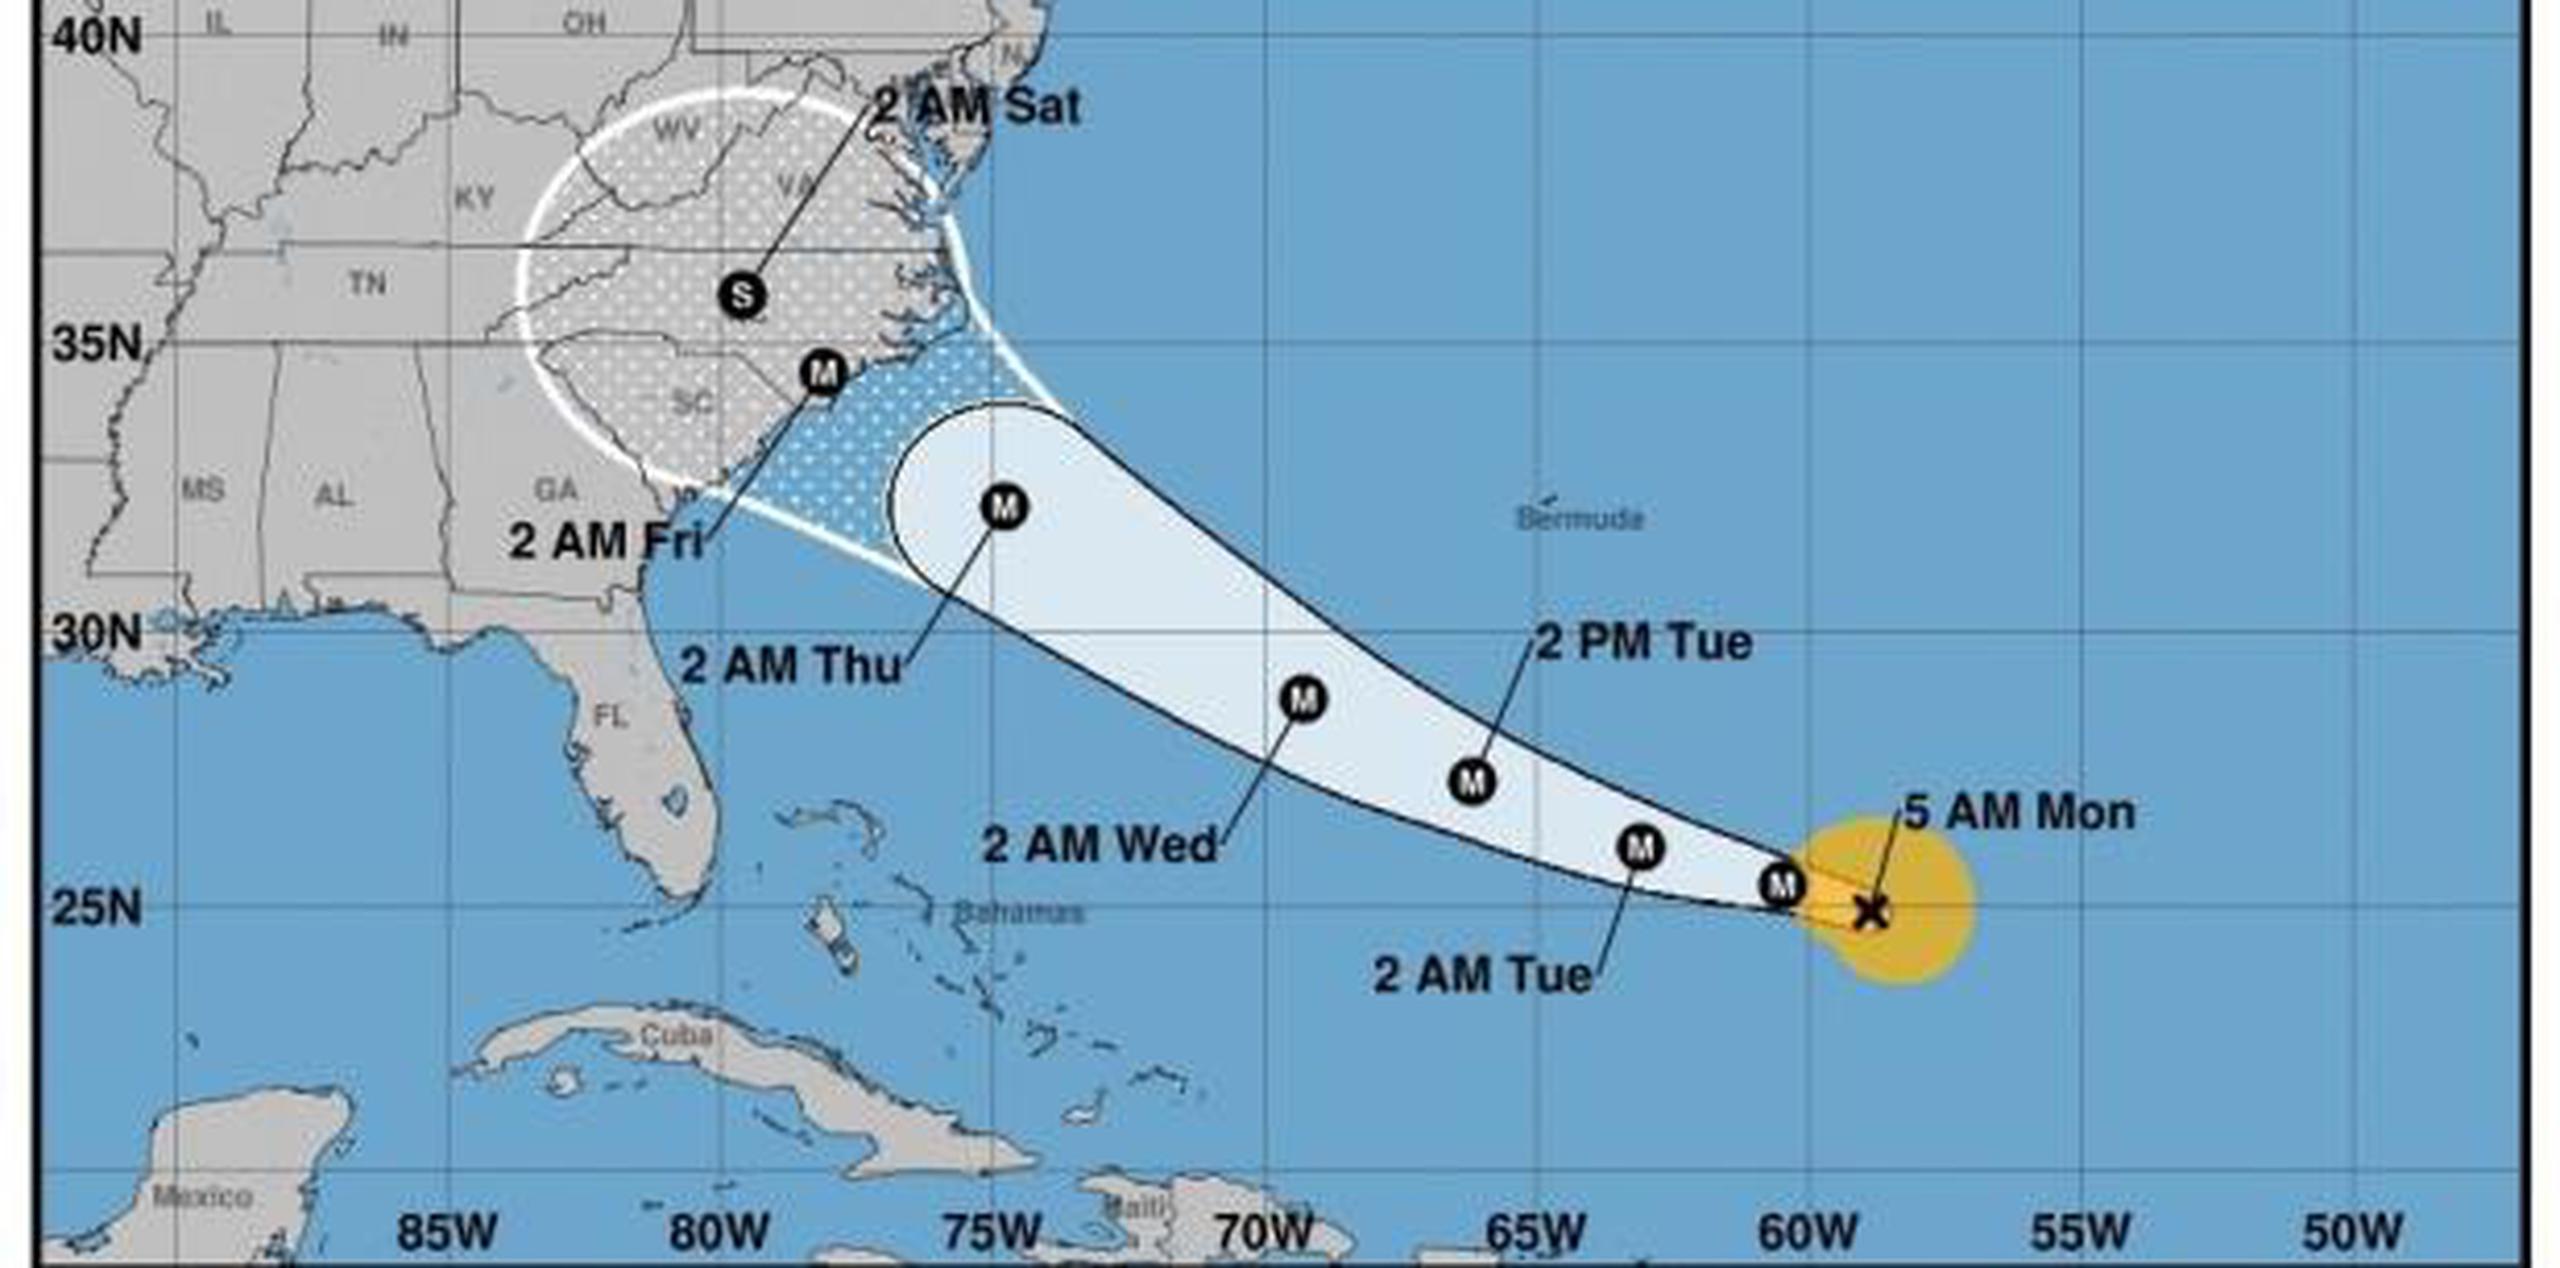 Imagen del Centro Nacional de Huracanes (NHC) que muestra el pronóstico de cinco días del huracán Florence durante su paso por el Atlántico hacia las costas estadounidenses. (AP)